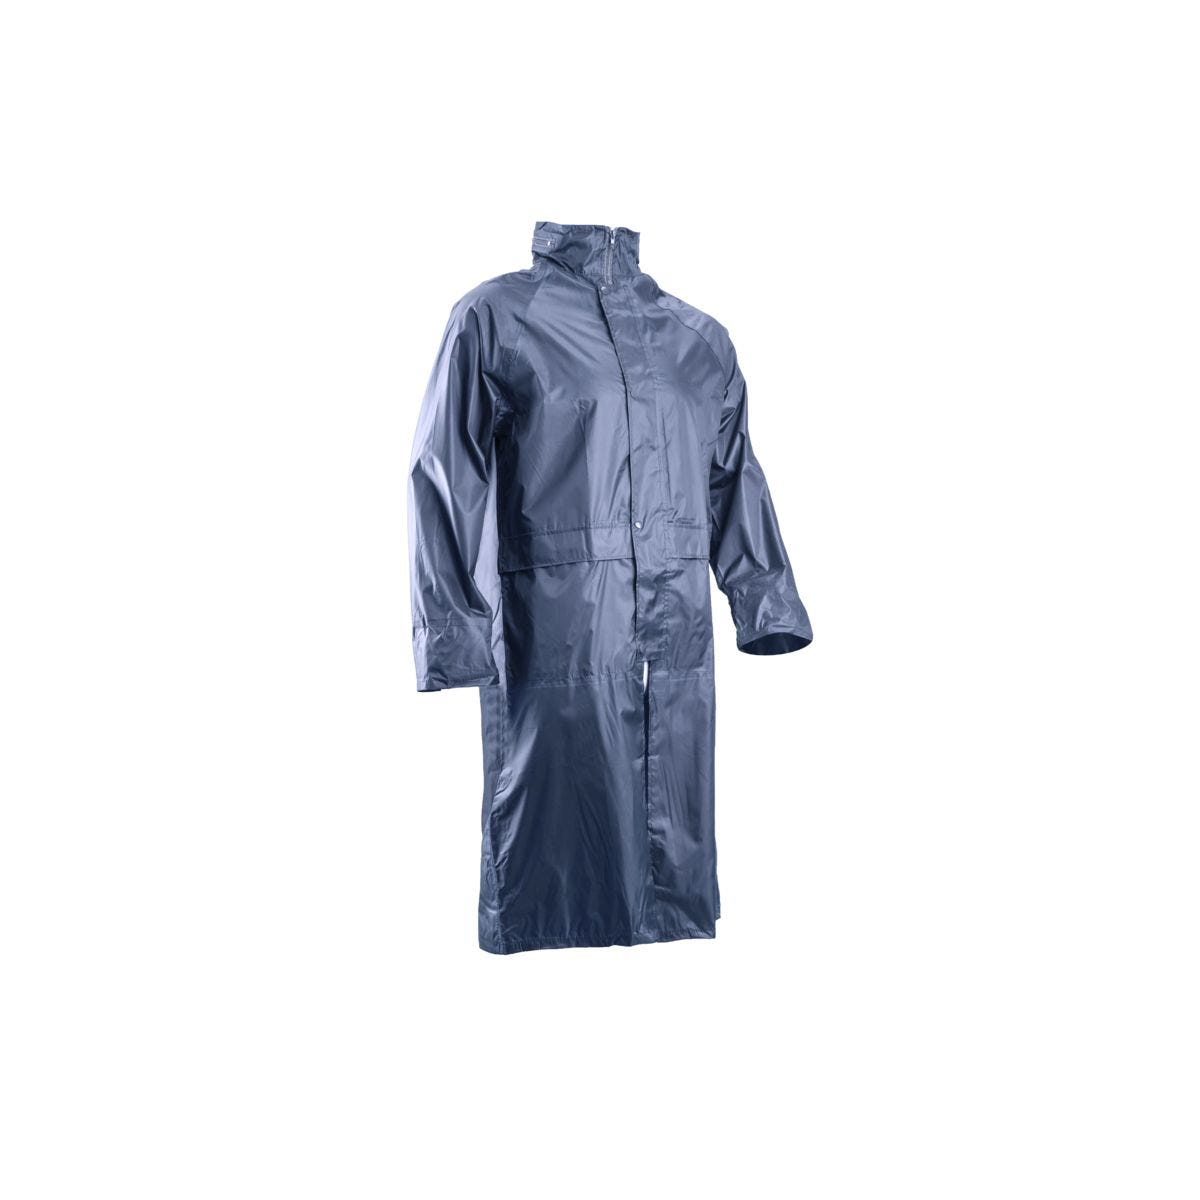 Manteau de pluie PVC, marine, 185g/m² - COVERGUARD - Taille L 0